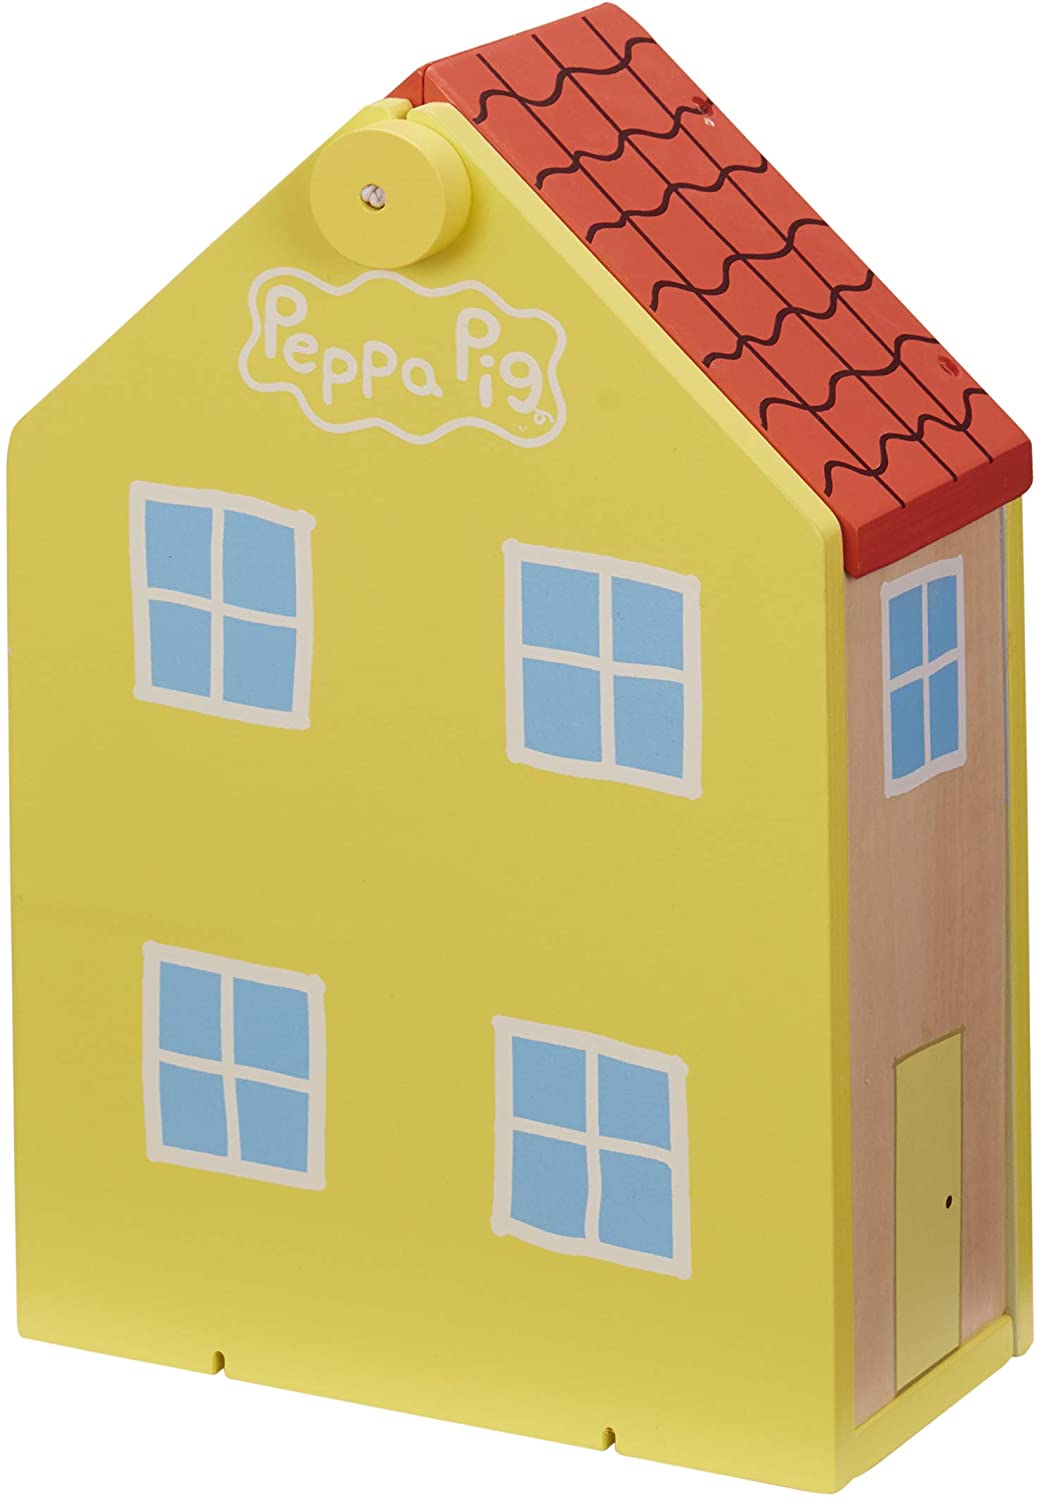 Peppa Pig 07213 Maison familiale en bois, multicolore